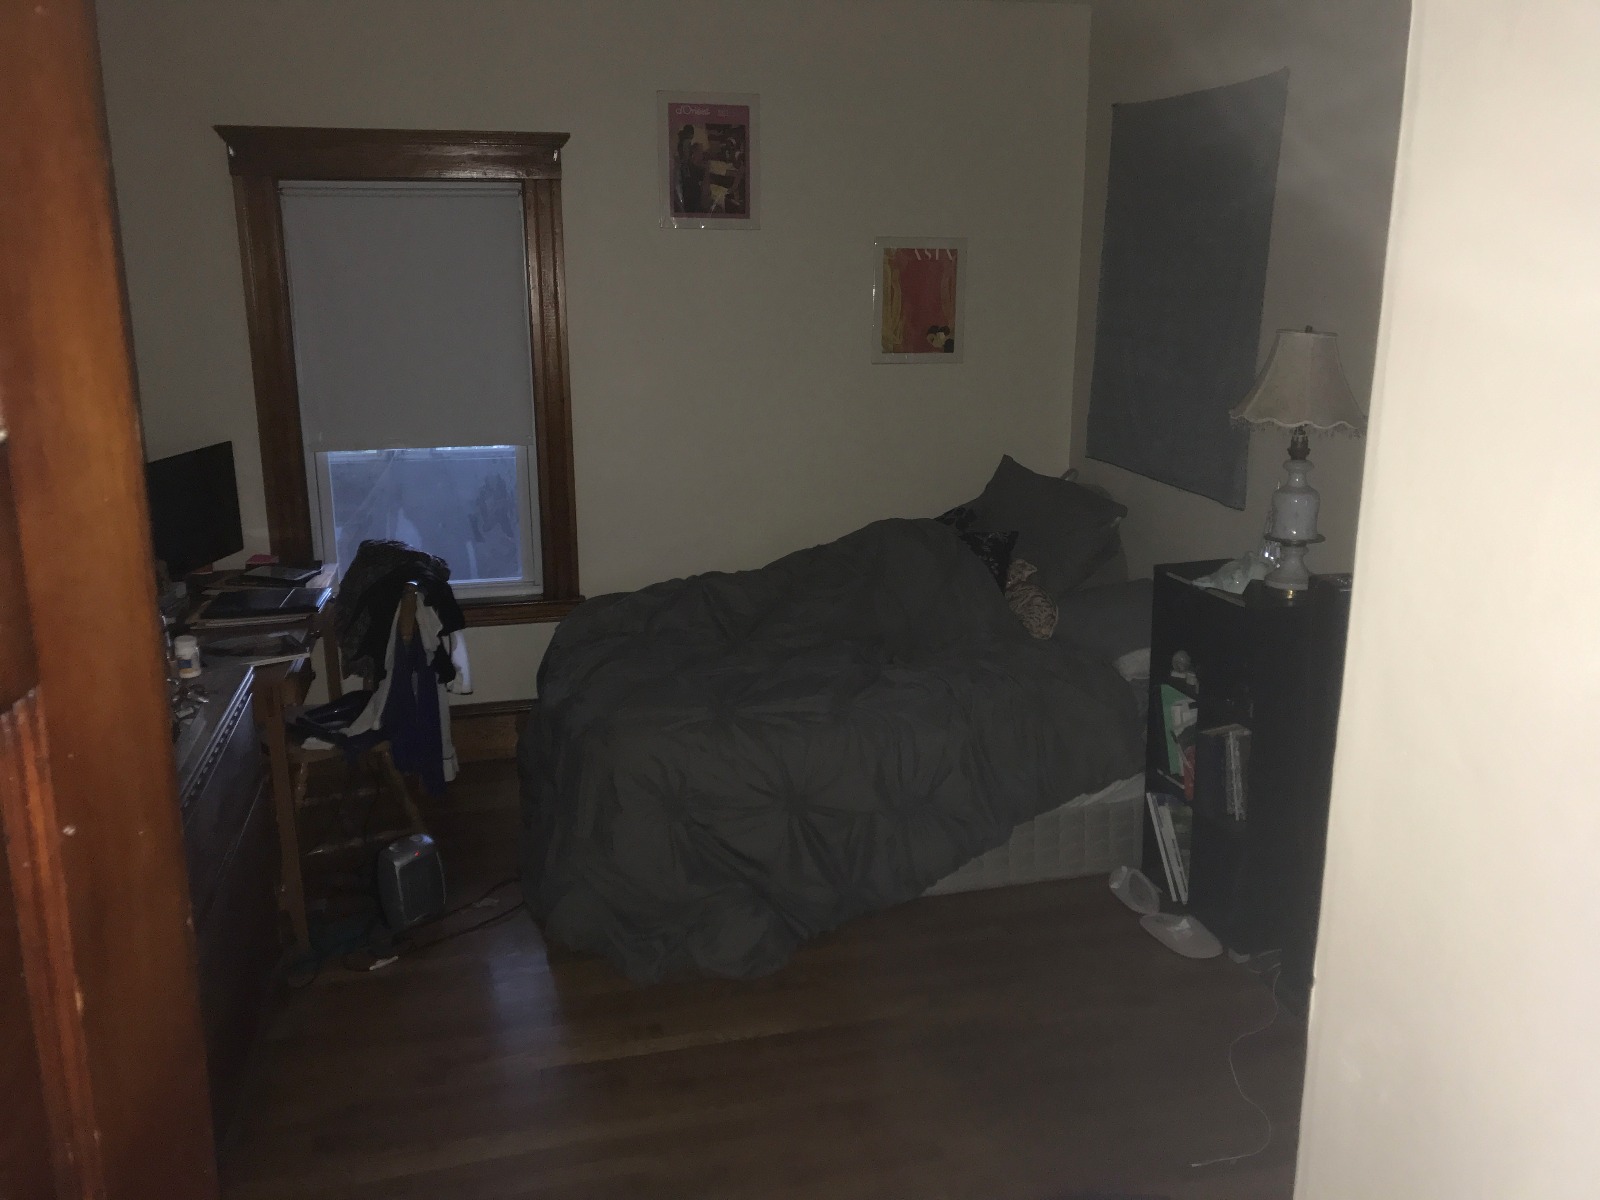 Photos of apartment on Boston,Medford MA 02155